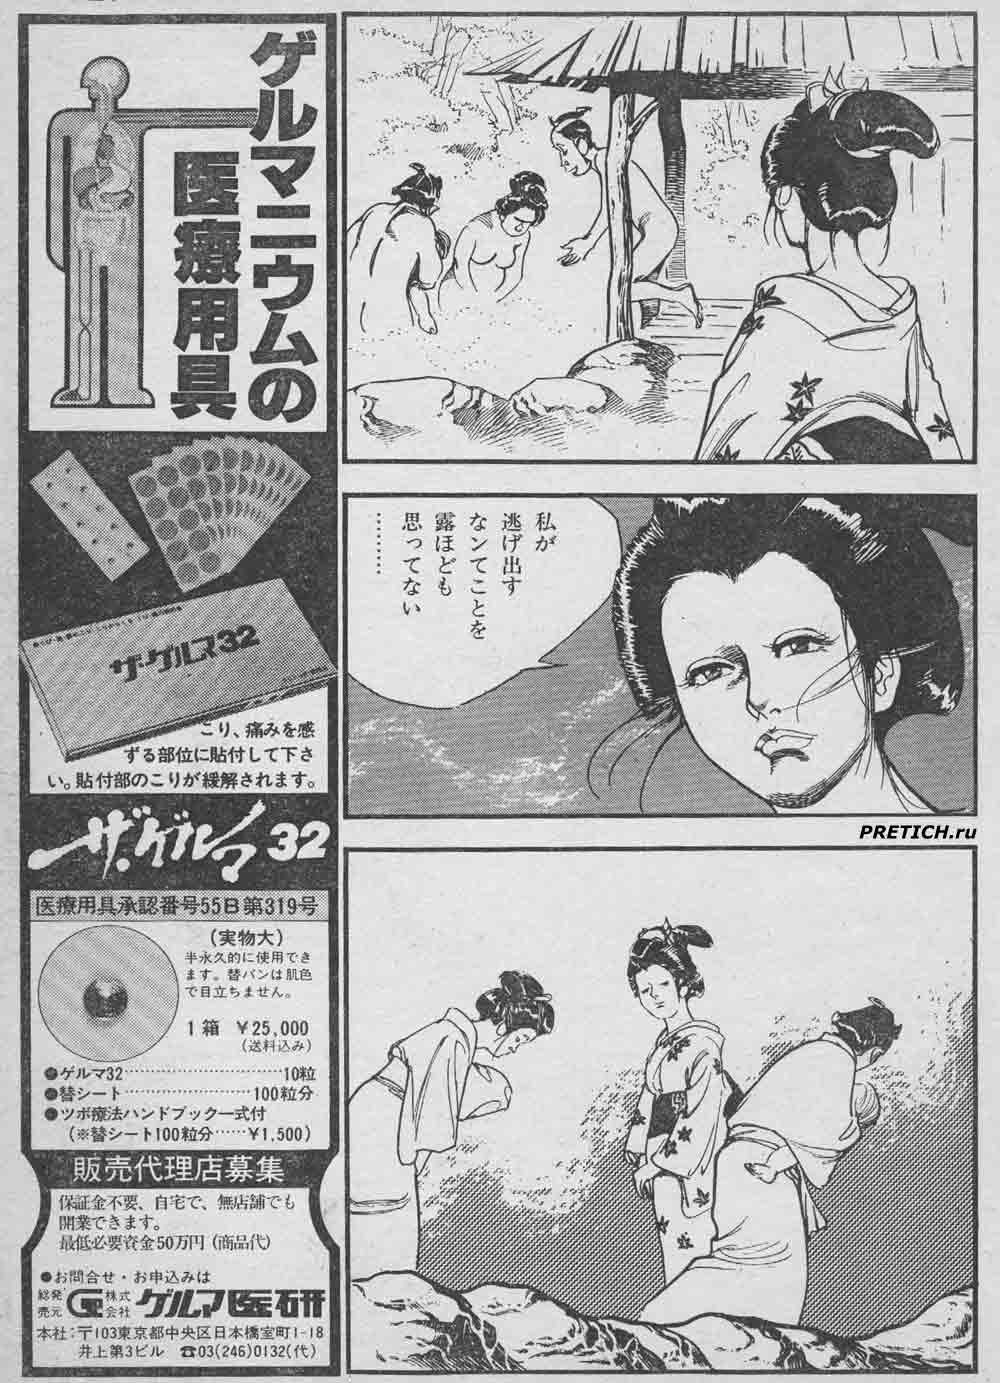 рисунки из японских журналов на японском